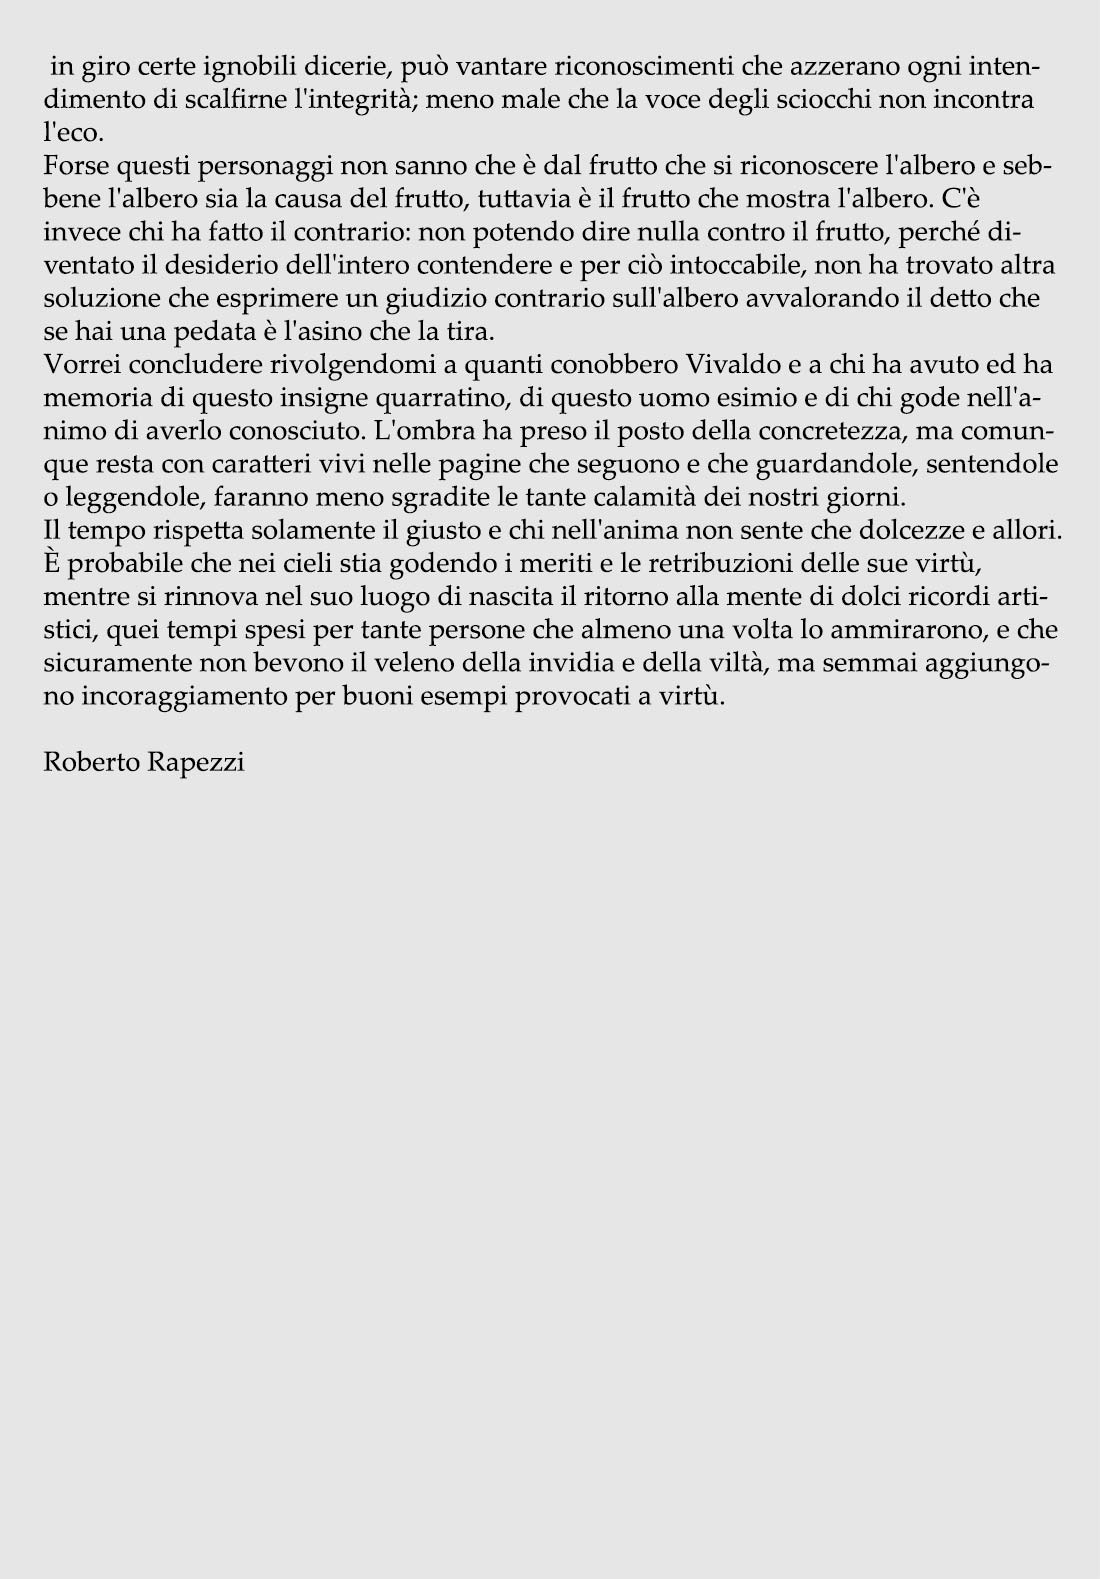 Elogio a Vivaldo - Rapezzi pt.4